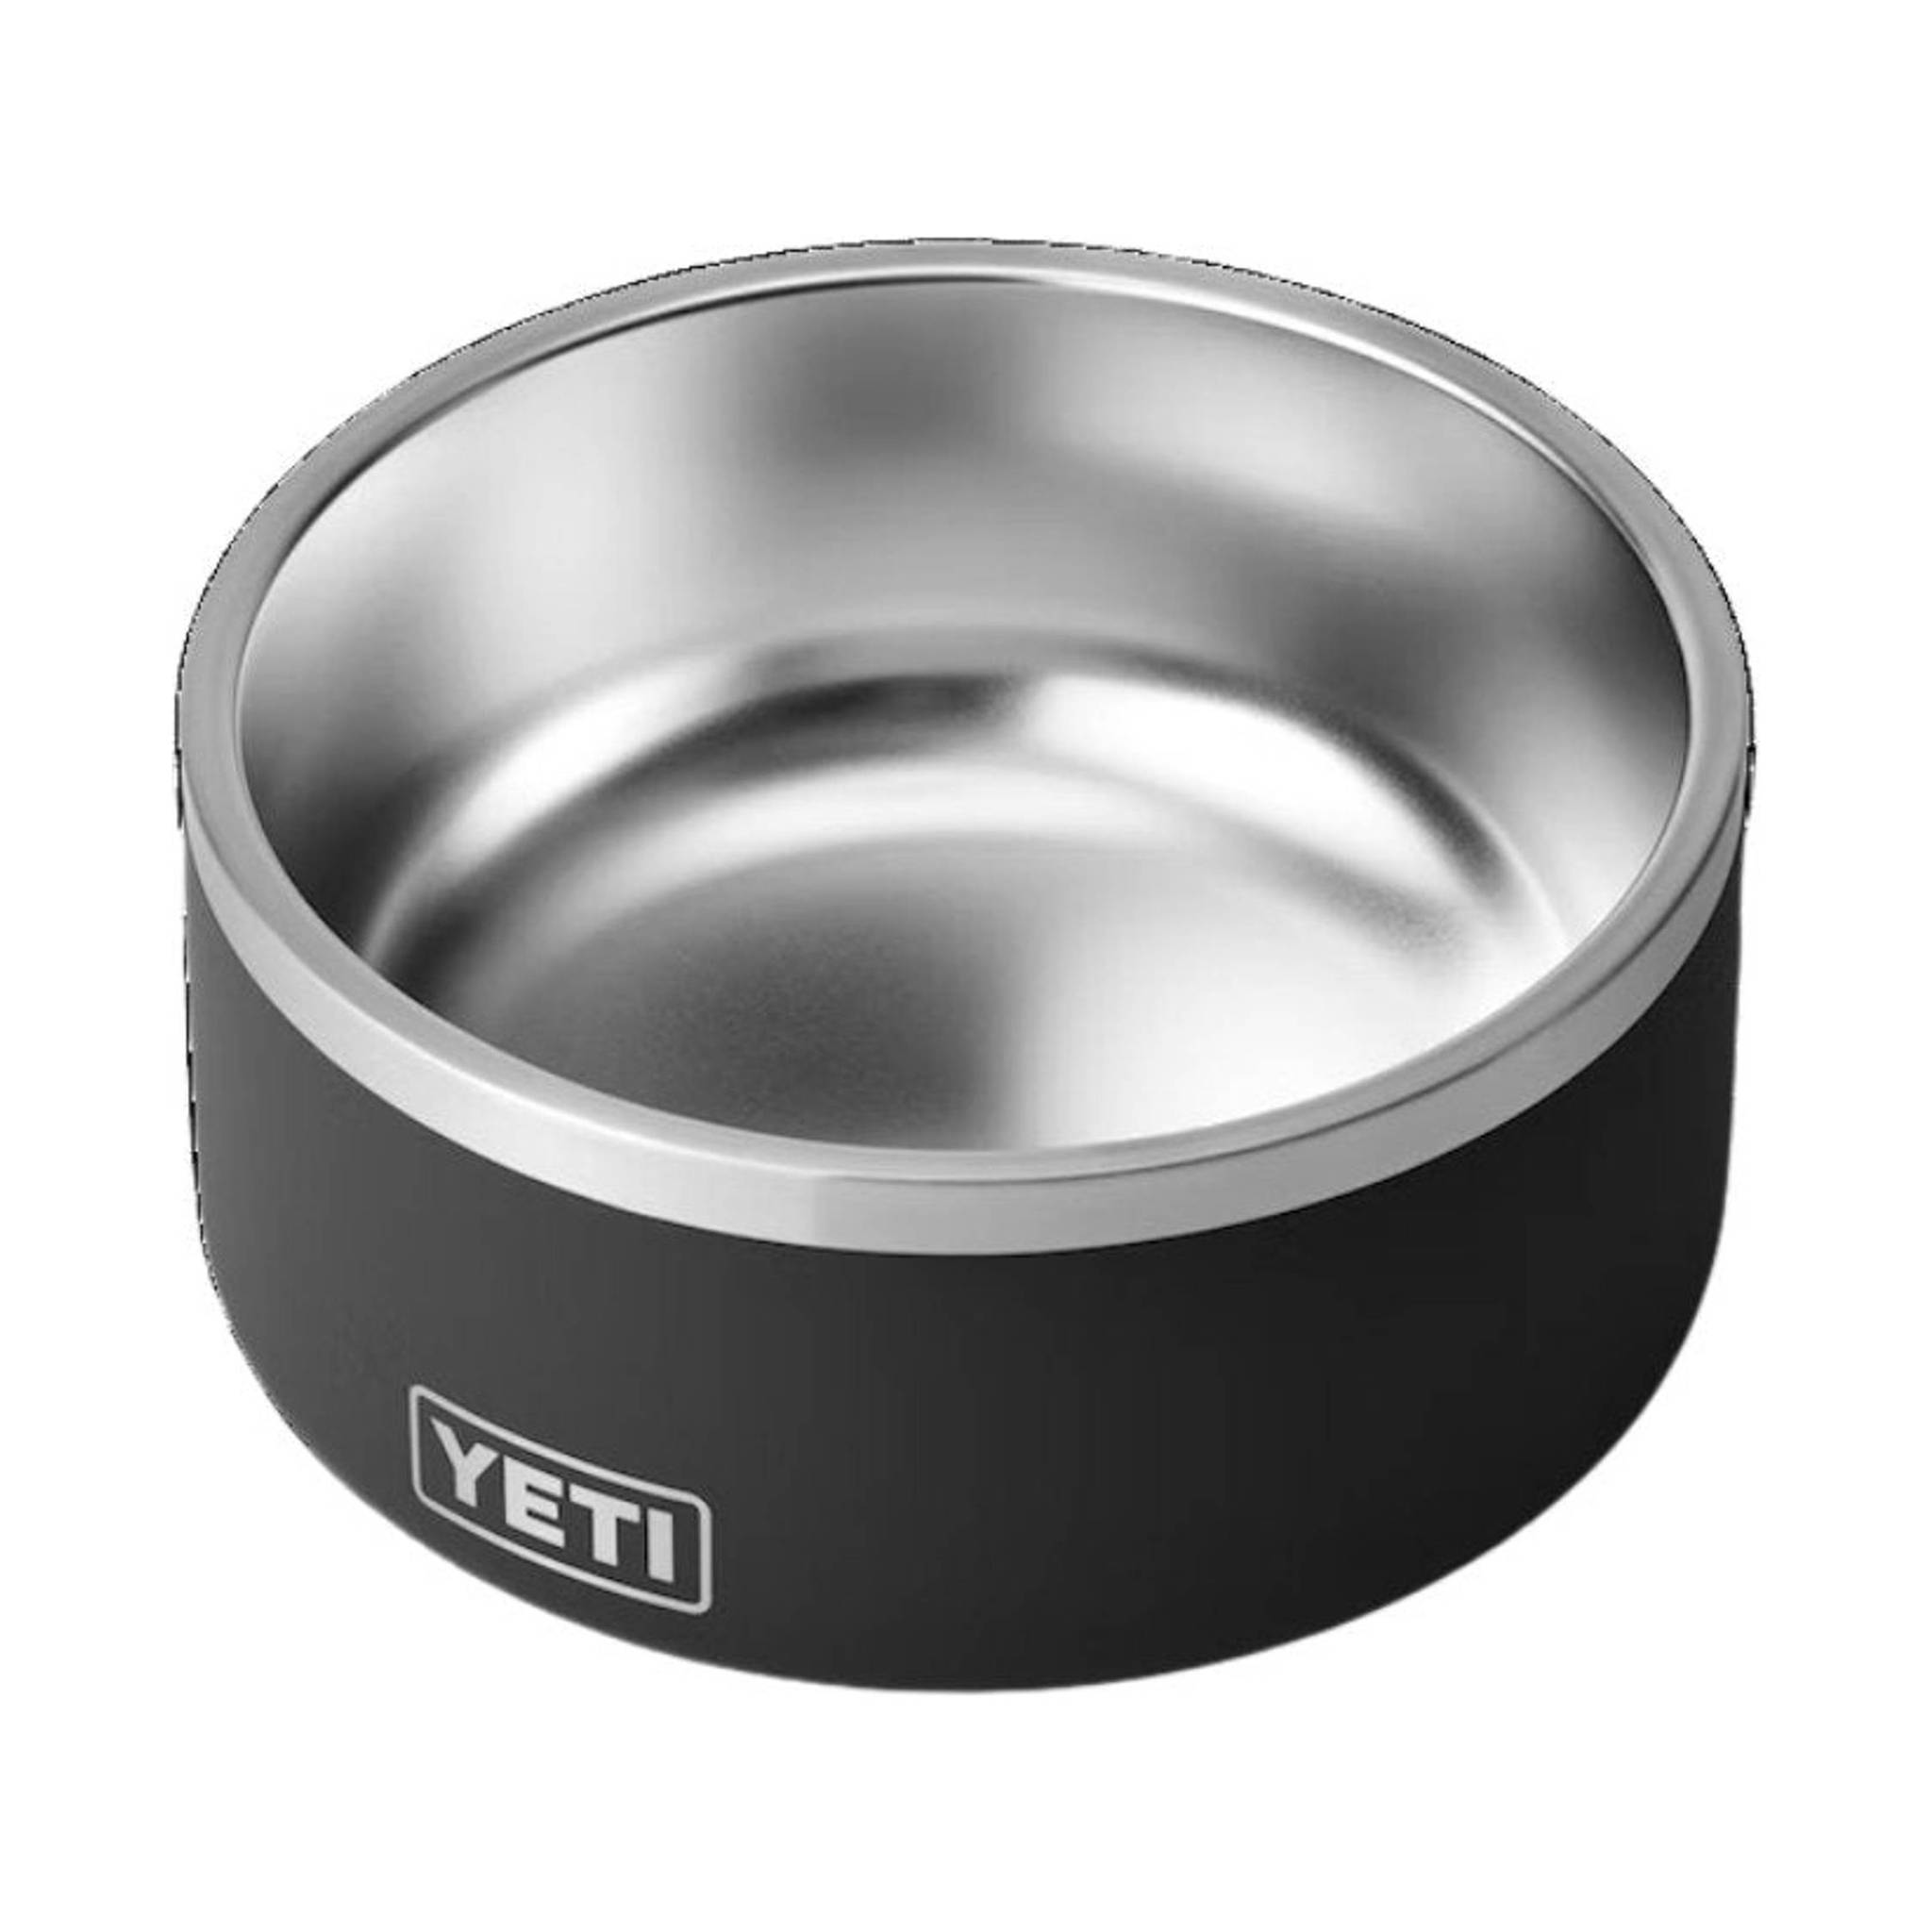 https://lennyshoe.com/cdn/shop/products/yeti-boomer-8-cup-dog-bowl-black-788163.jpg?v=1689266578